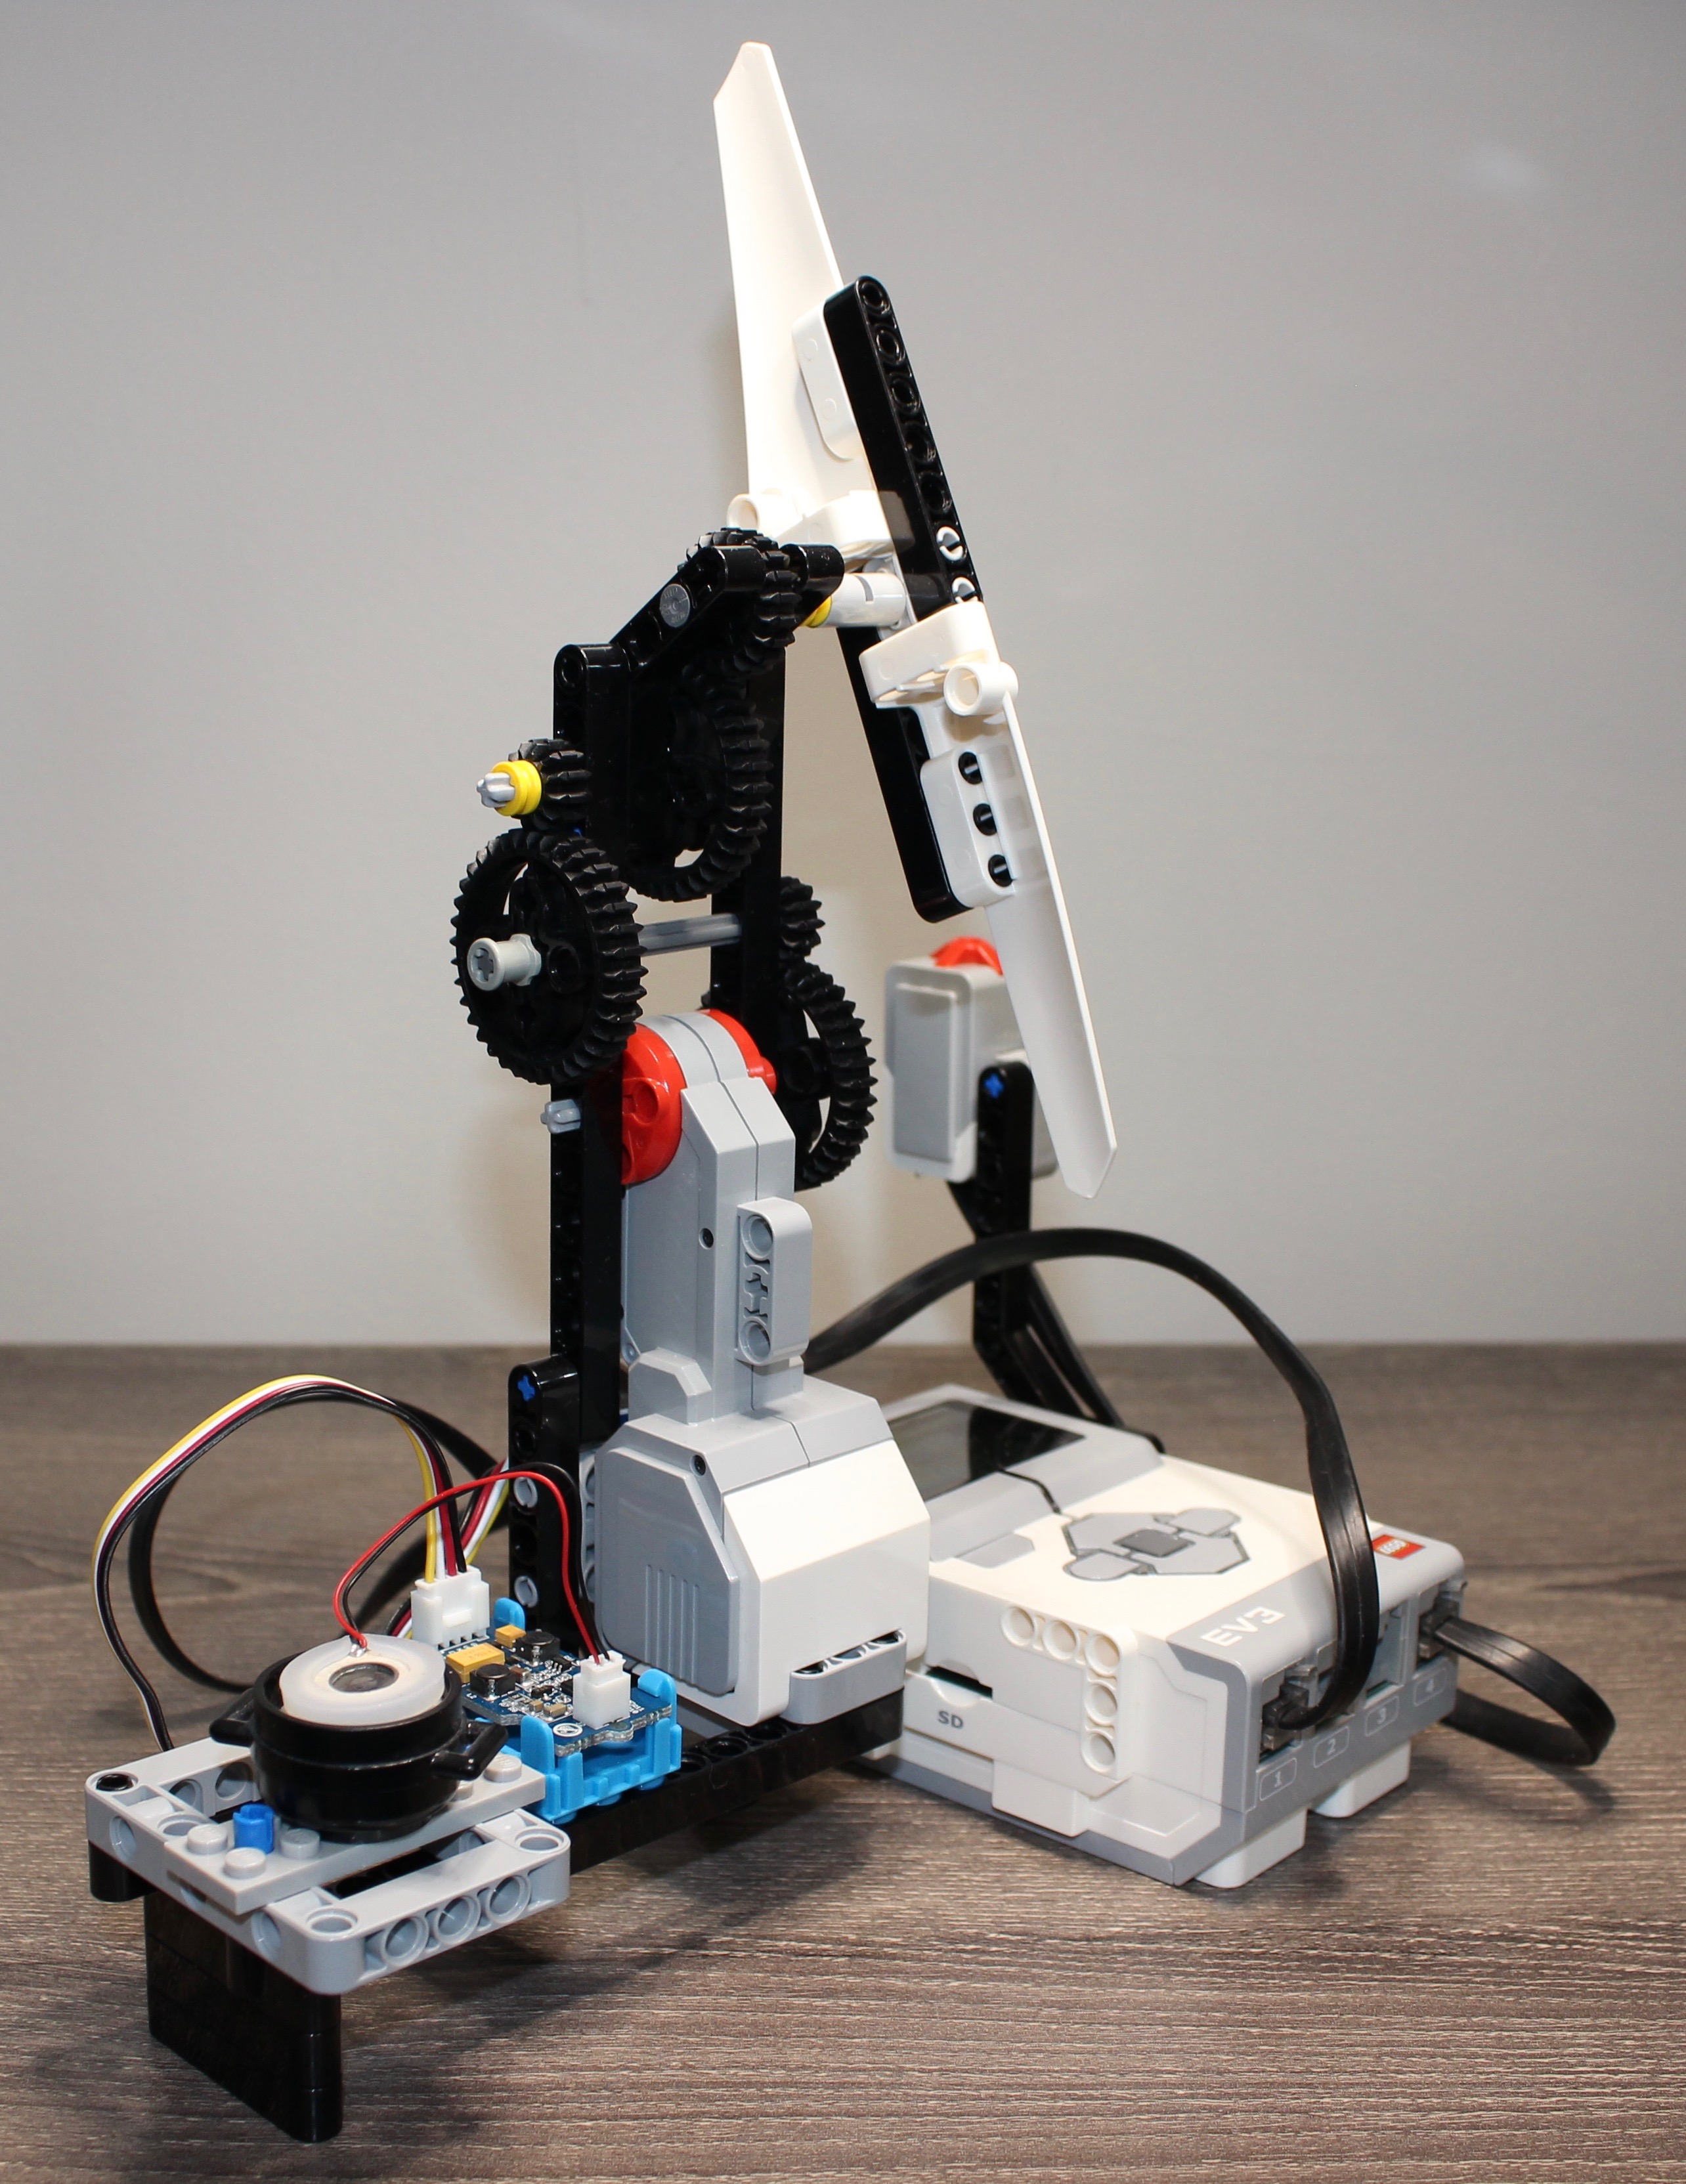 The LEGO Aromatherapy machine.